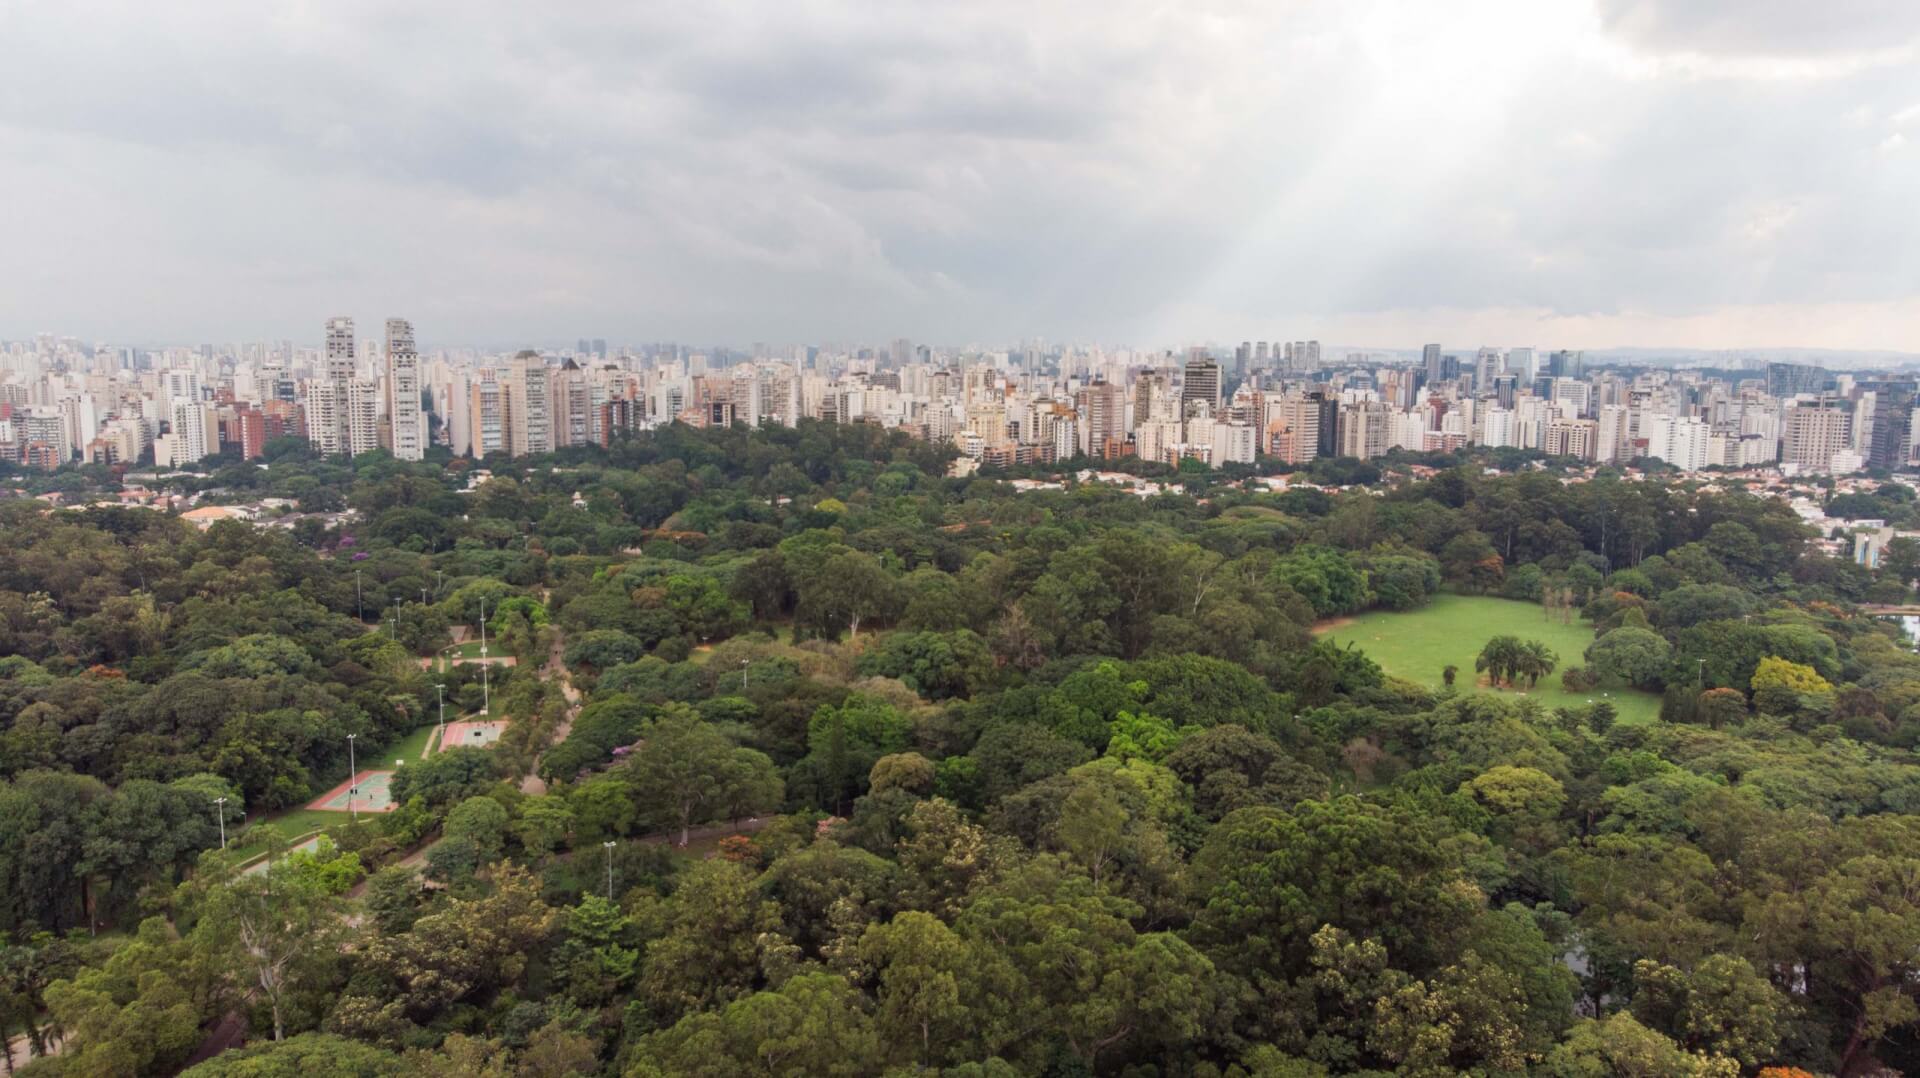 Vista aérea do Parque Ibirapuera